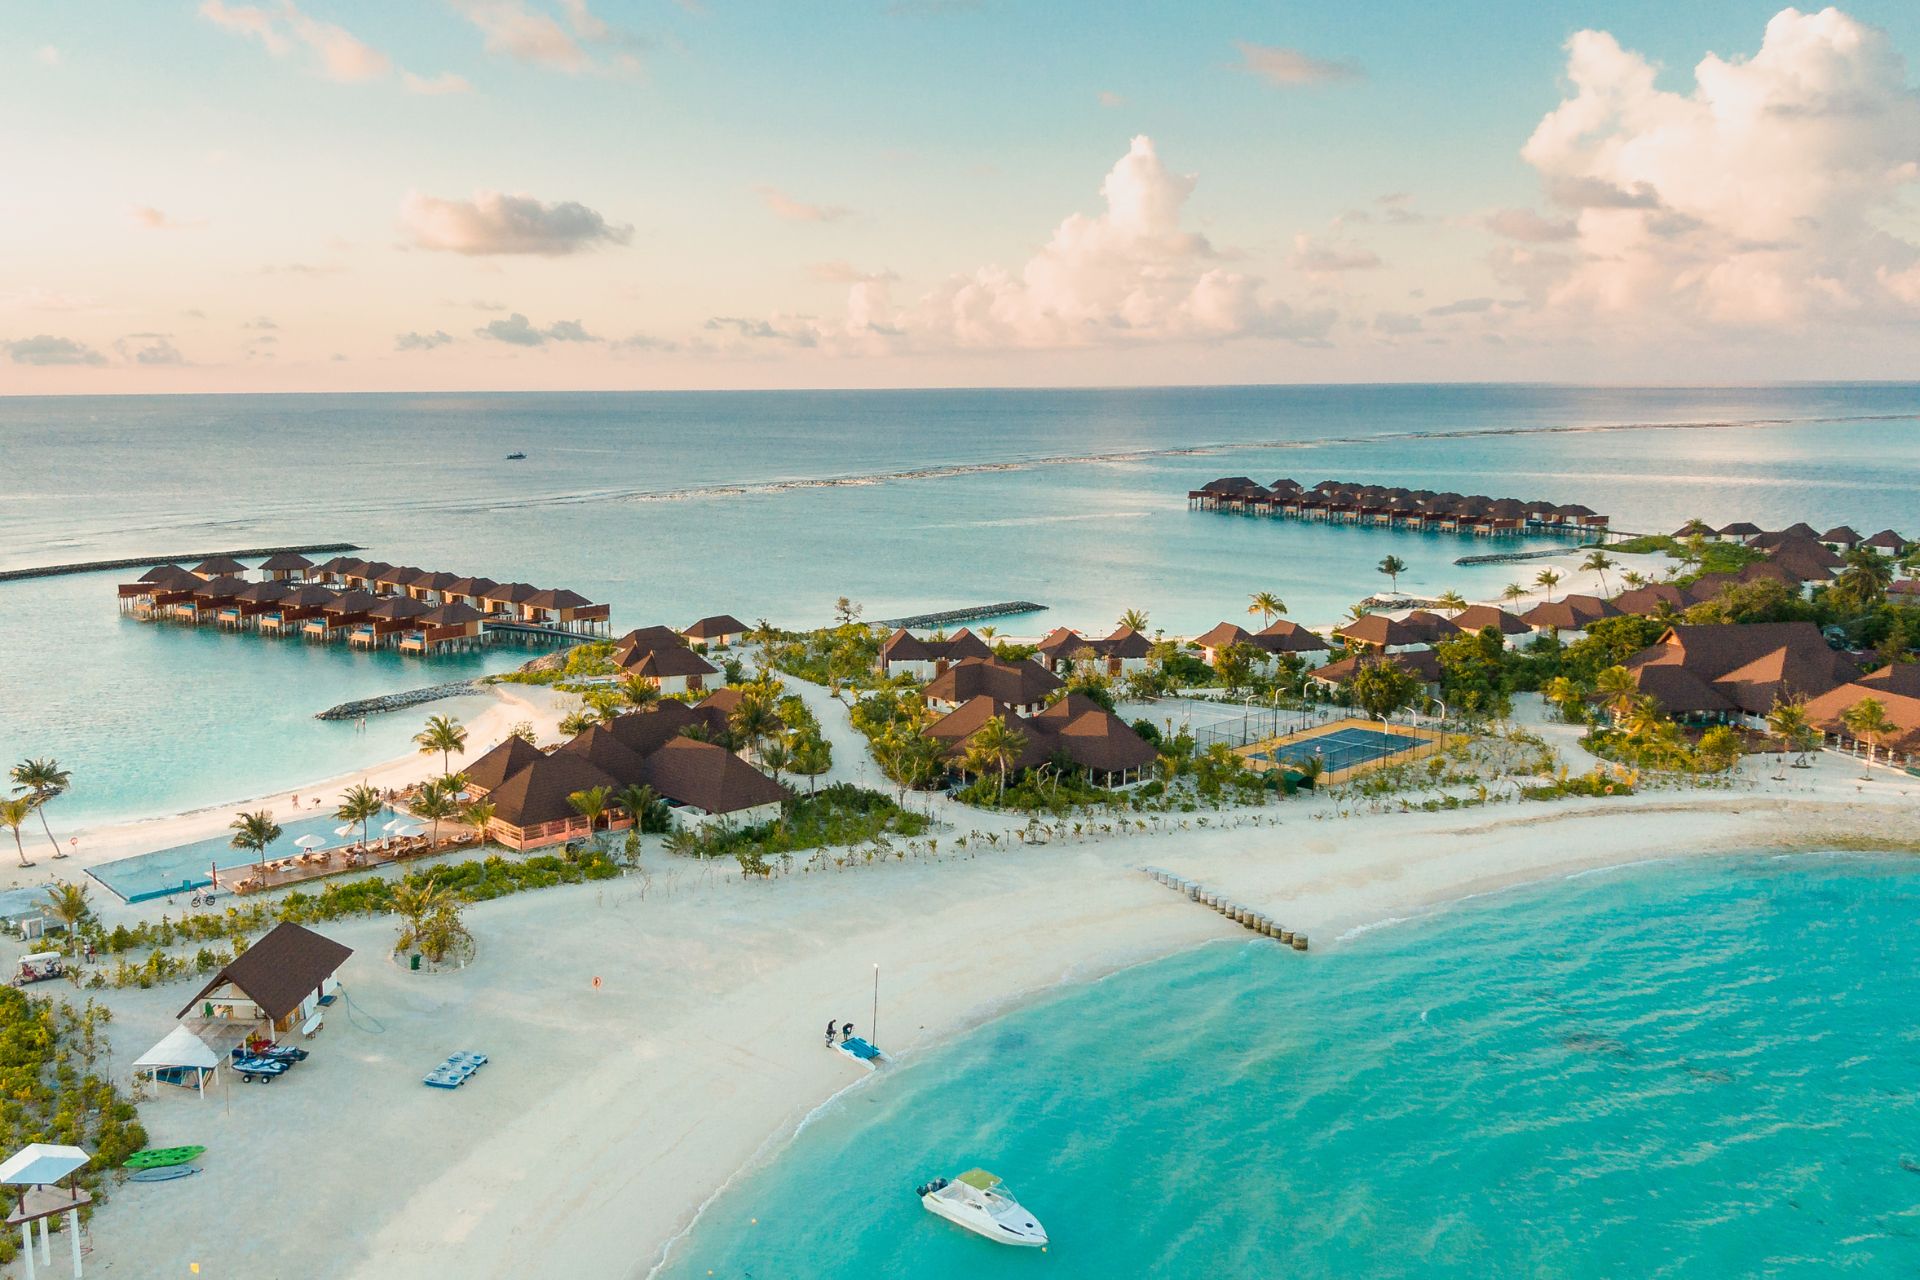 Aerial shot of a beach, Maldives.